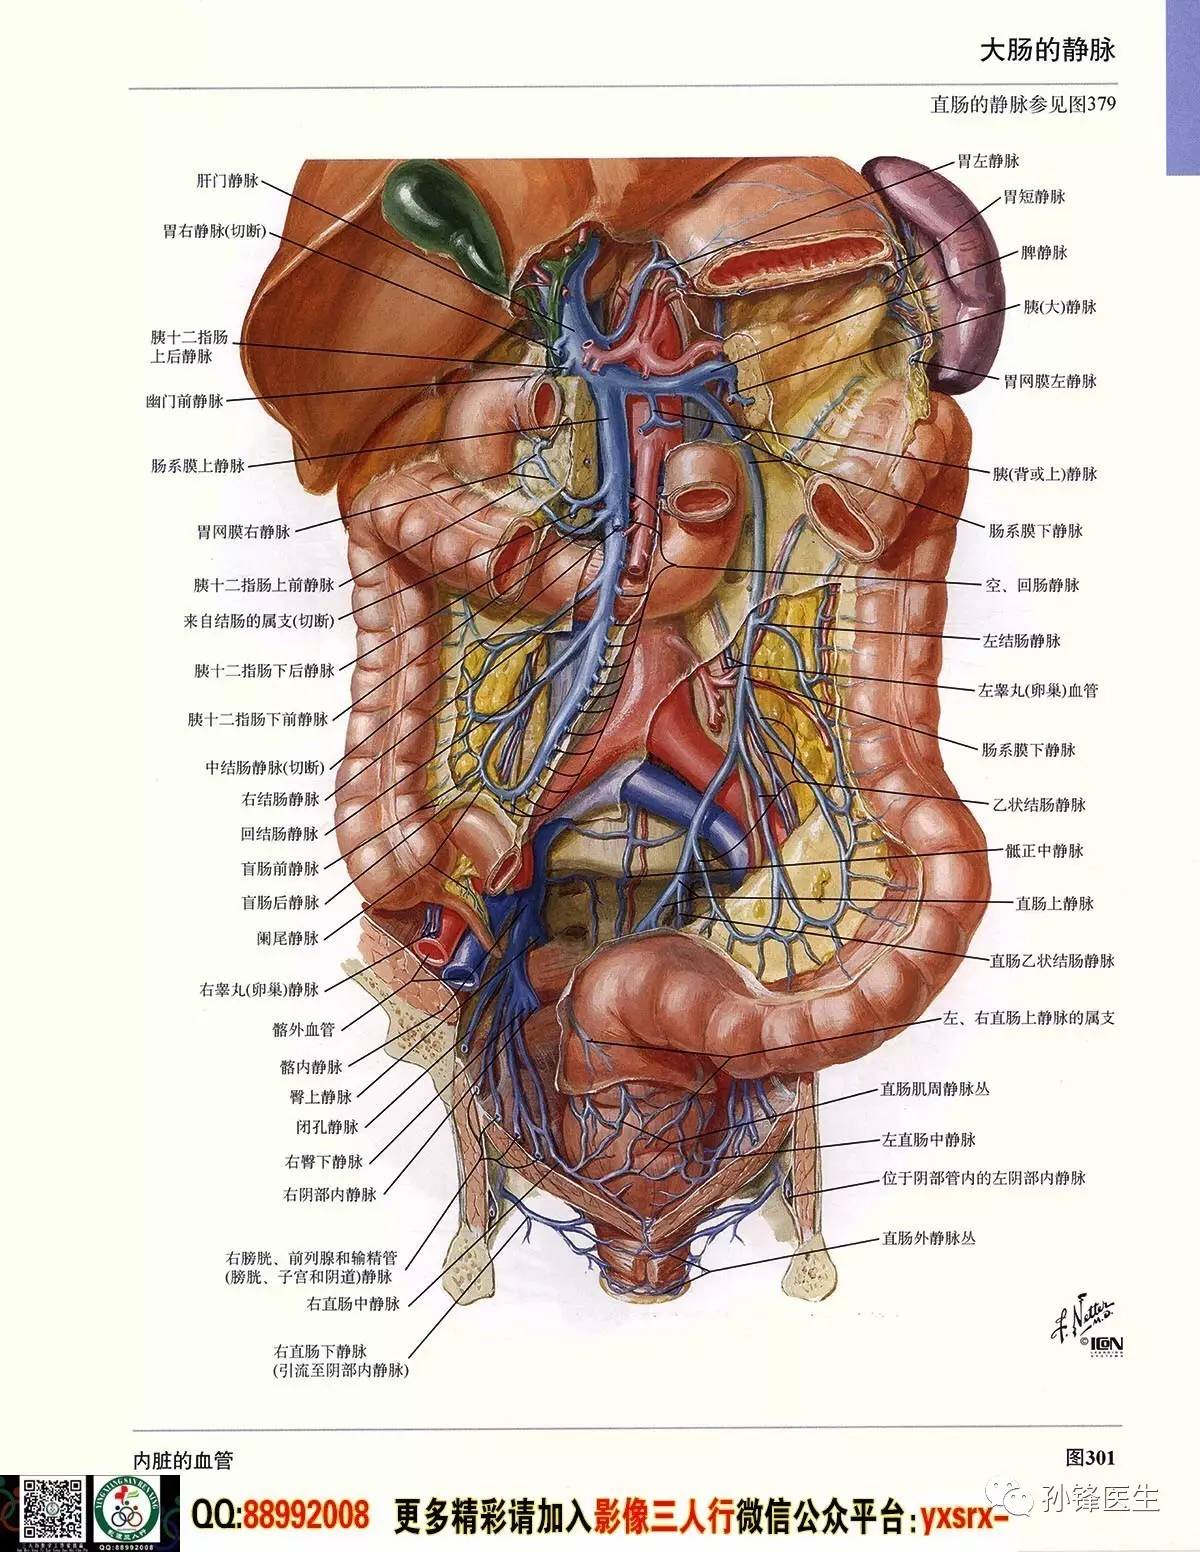 医学干货|超高清的《奈特人体解剖彩色图谱 腹部》(下)